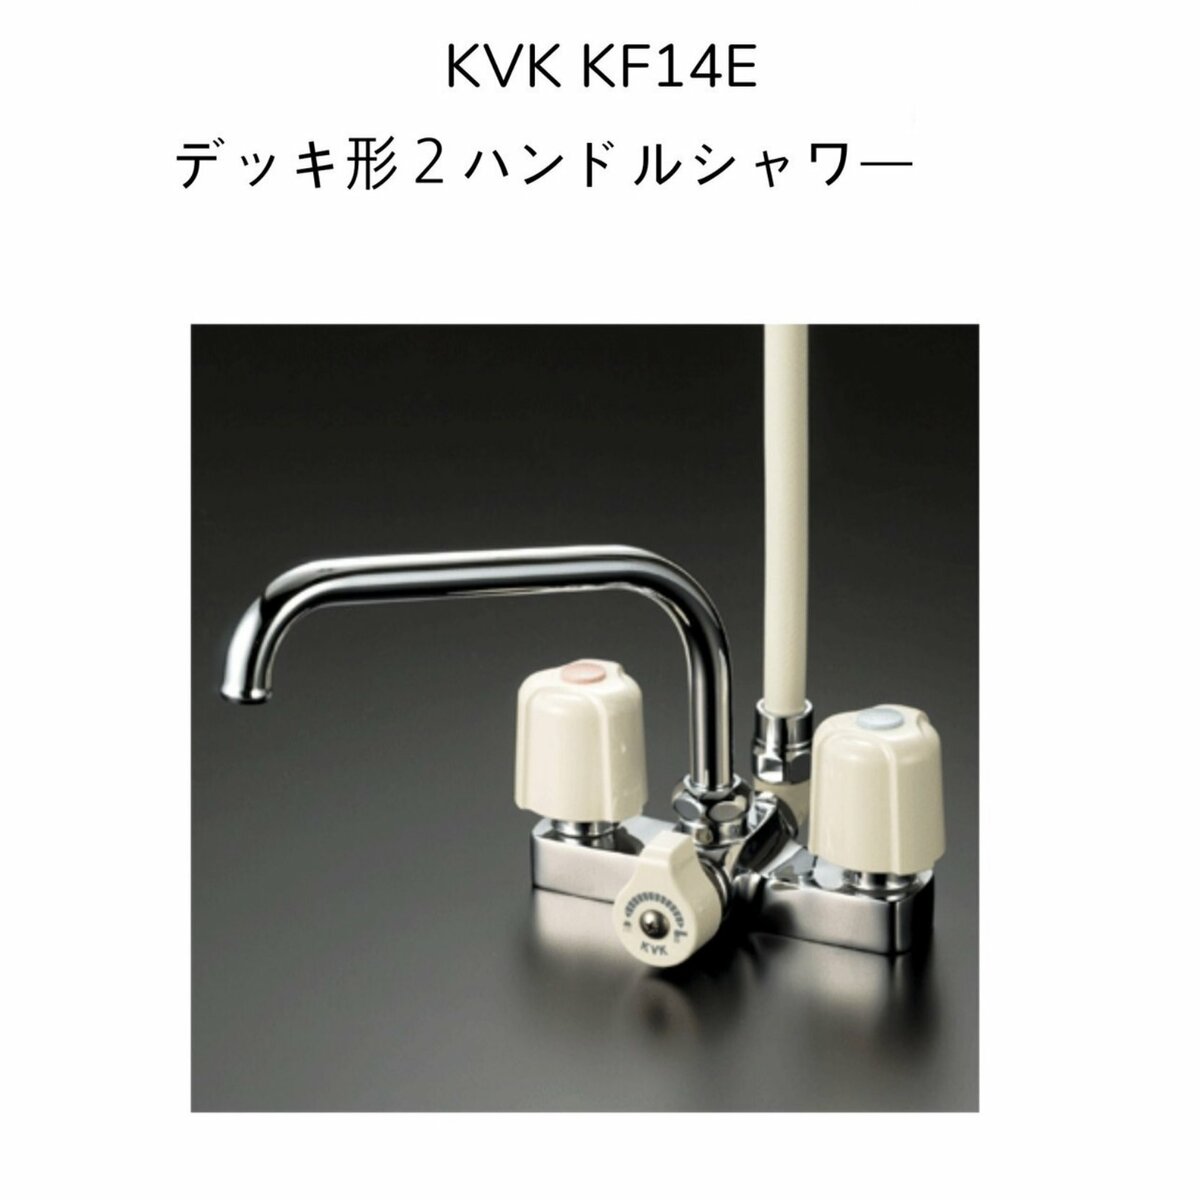 【限定在庫】KVK KF14E デッキ型2ハンドルシャワー 190mmパイプ付 取付ピッチ120mm シャワーホース白1.45m 白ハンガー 混合水栓 湯水